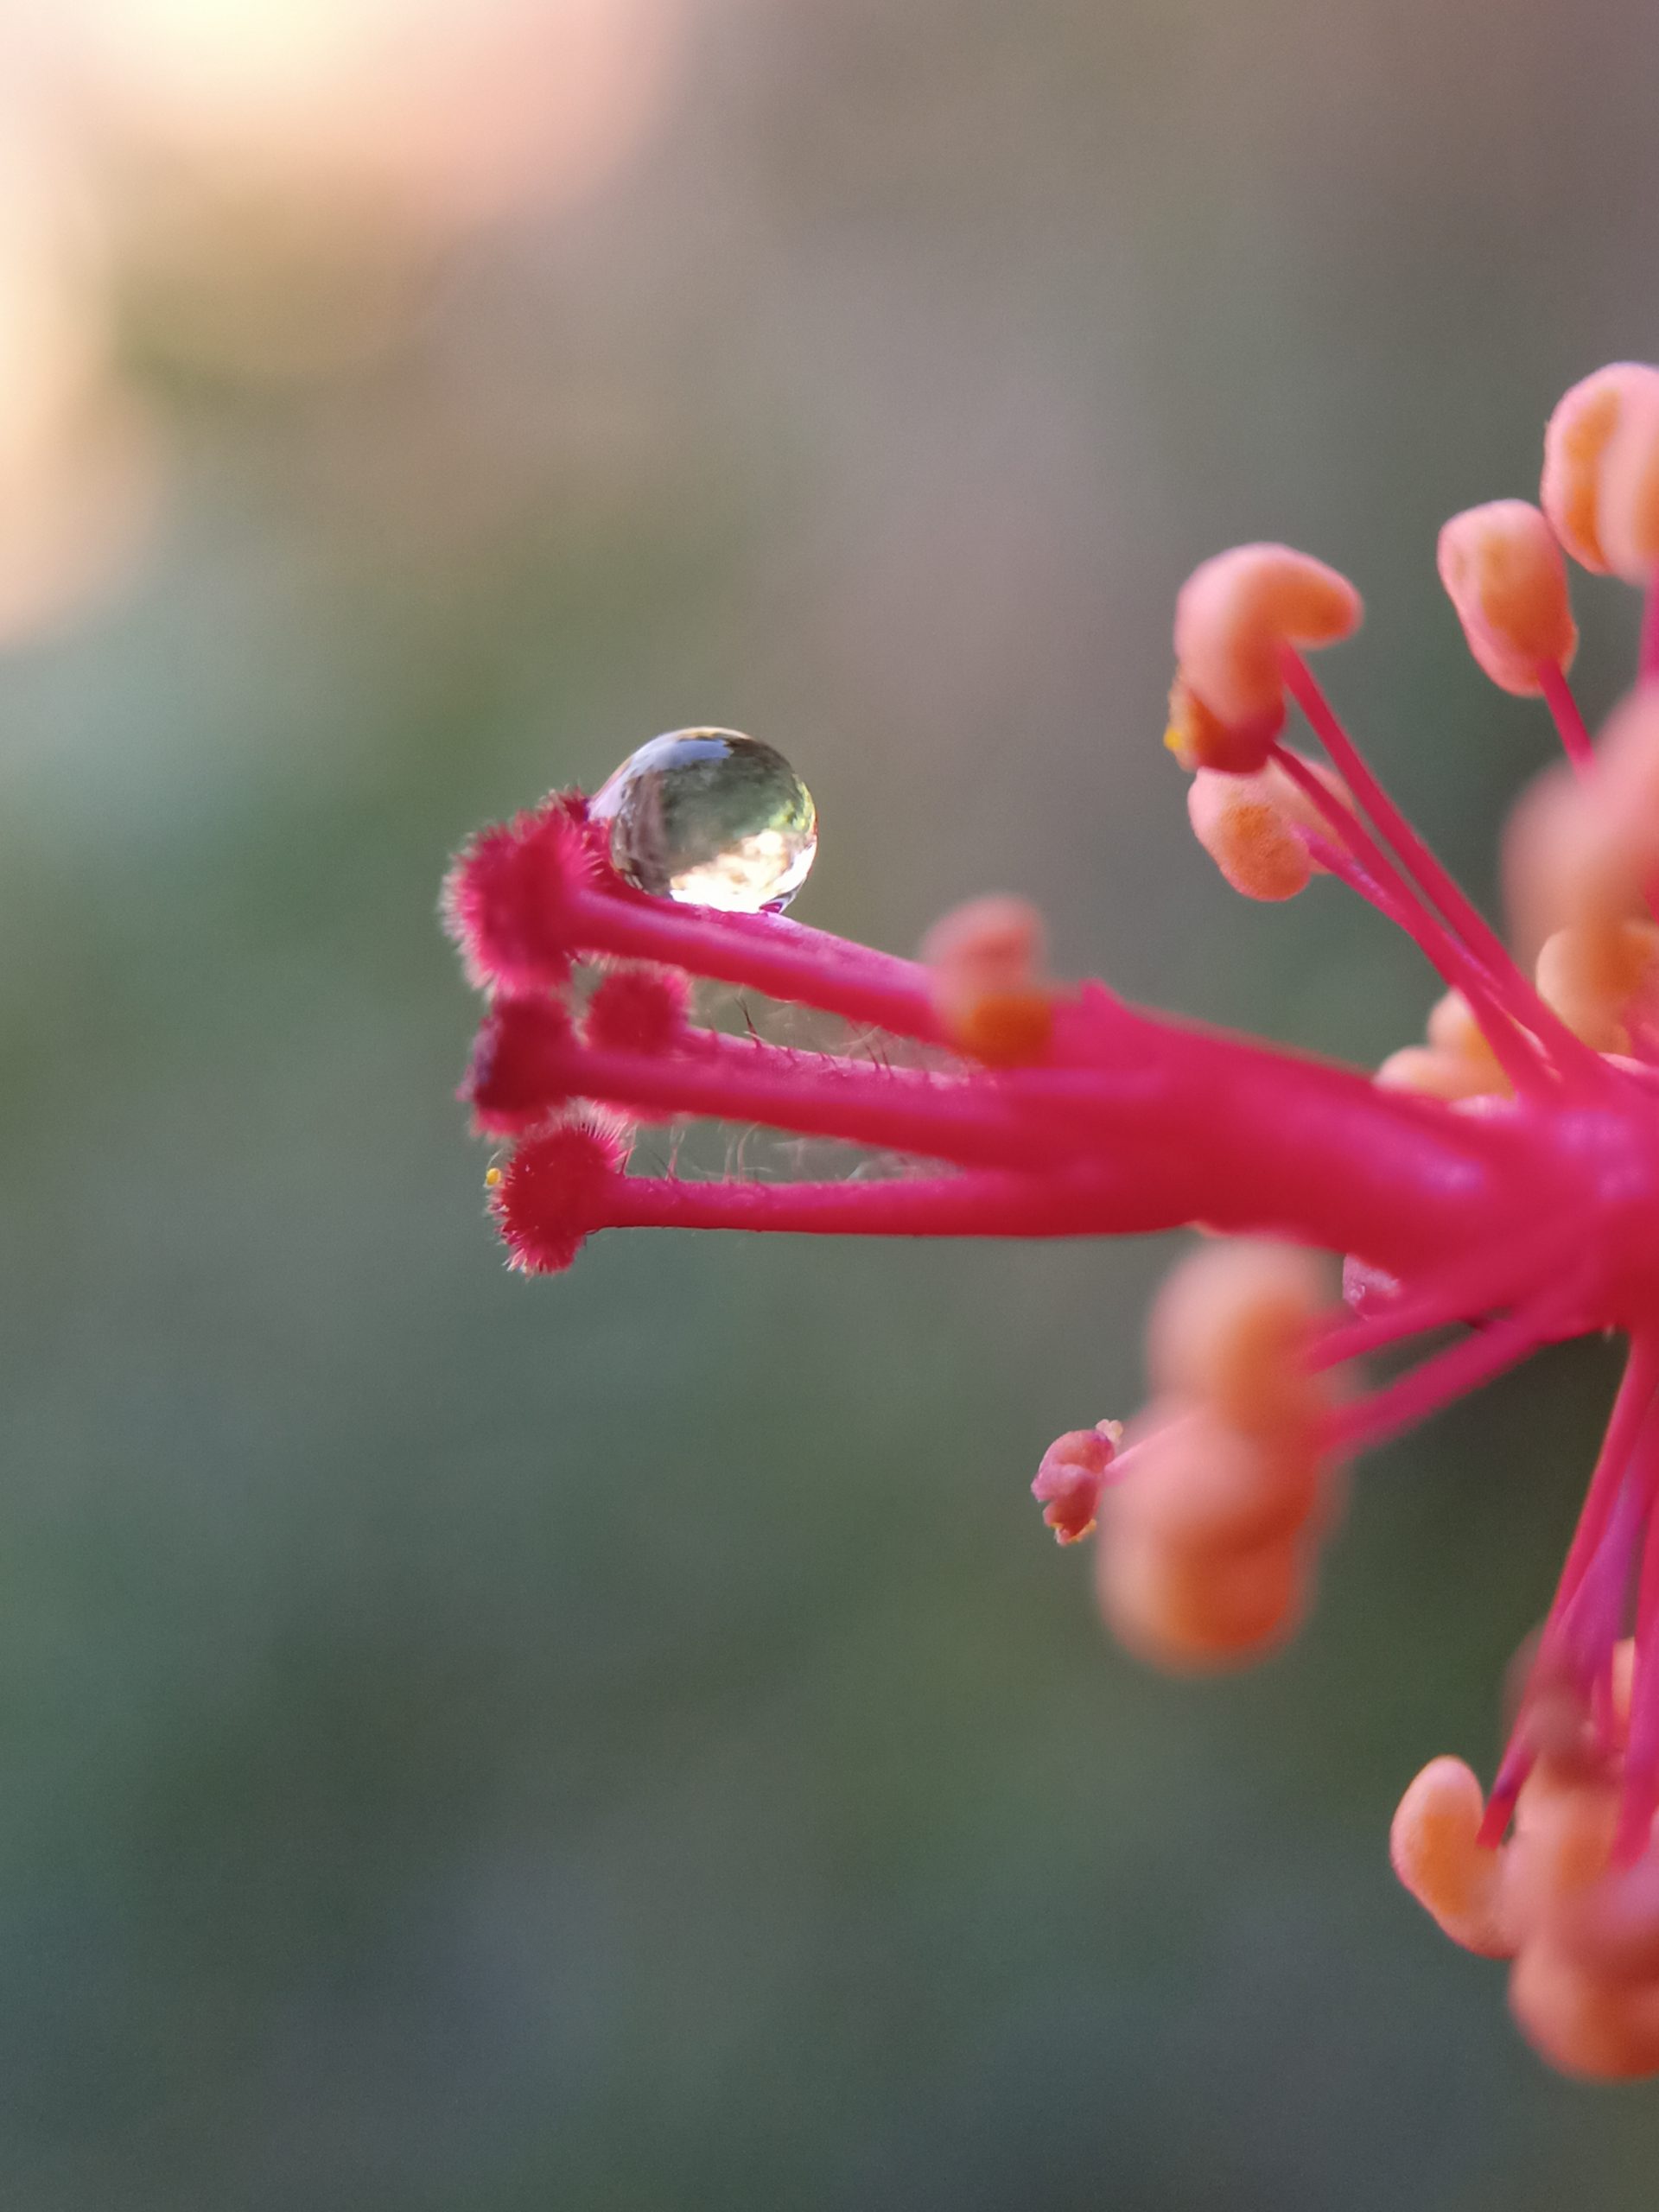 A water drop on a flower pistil